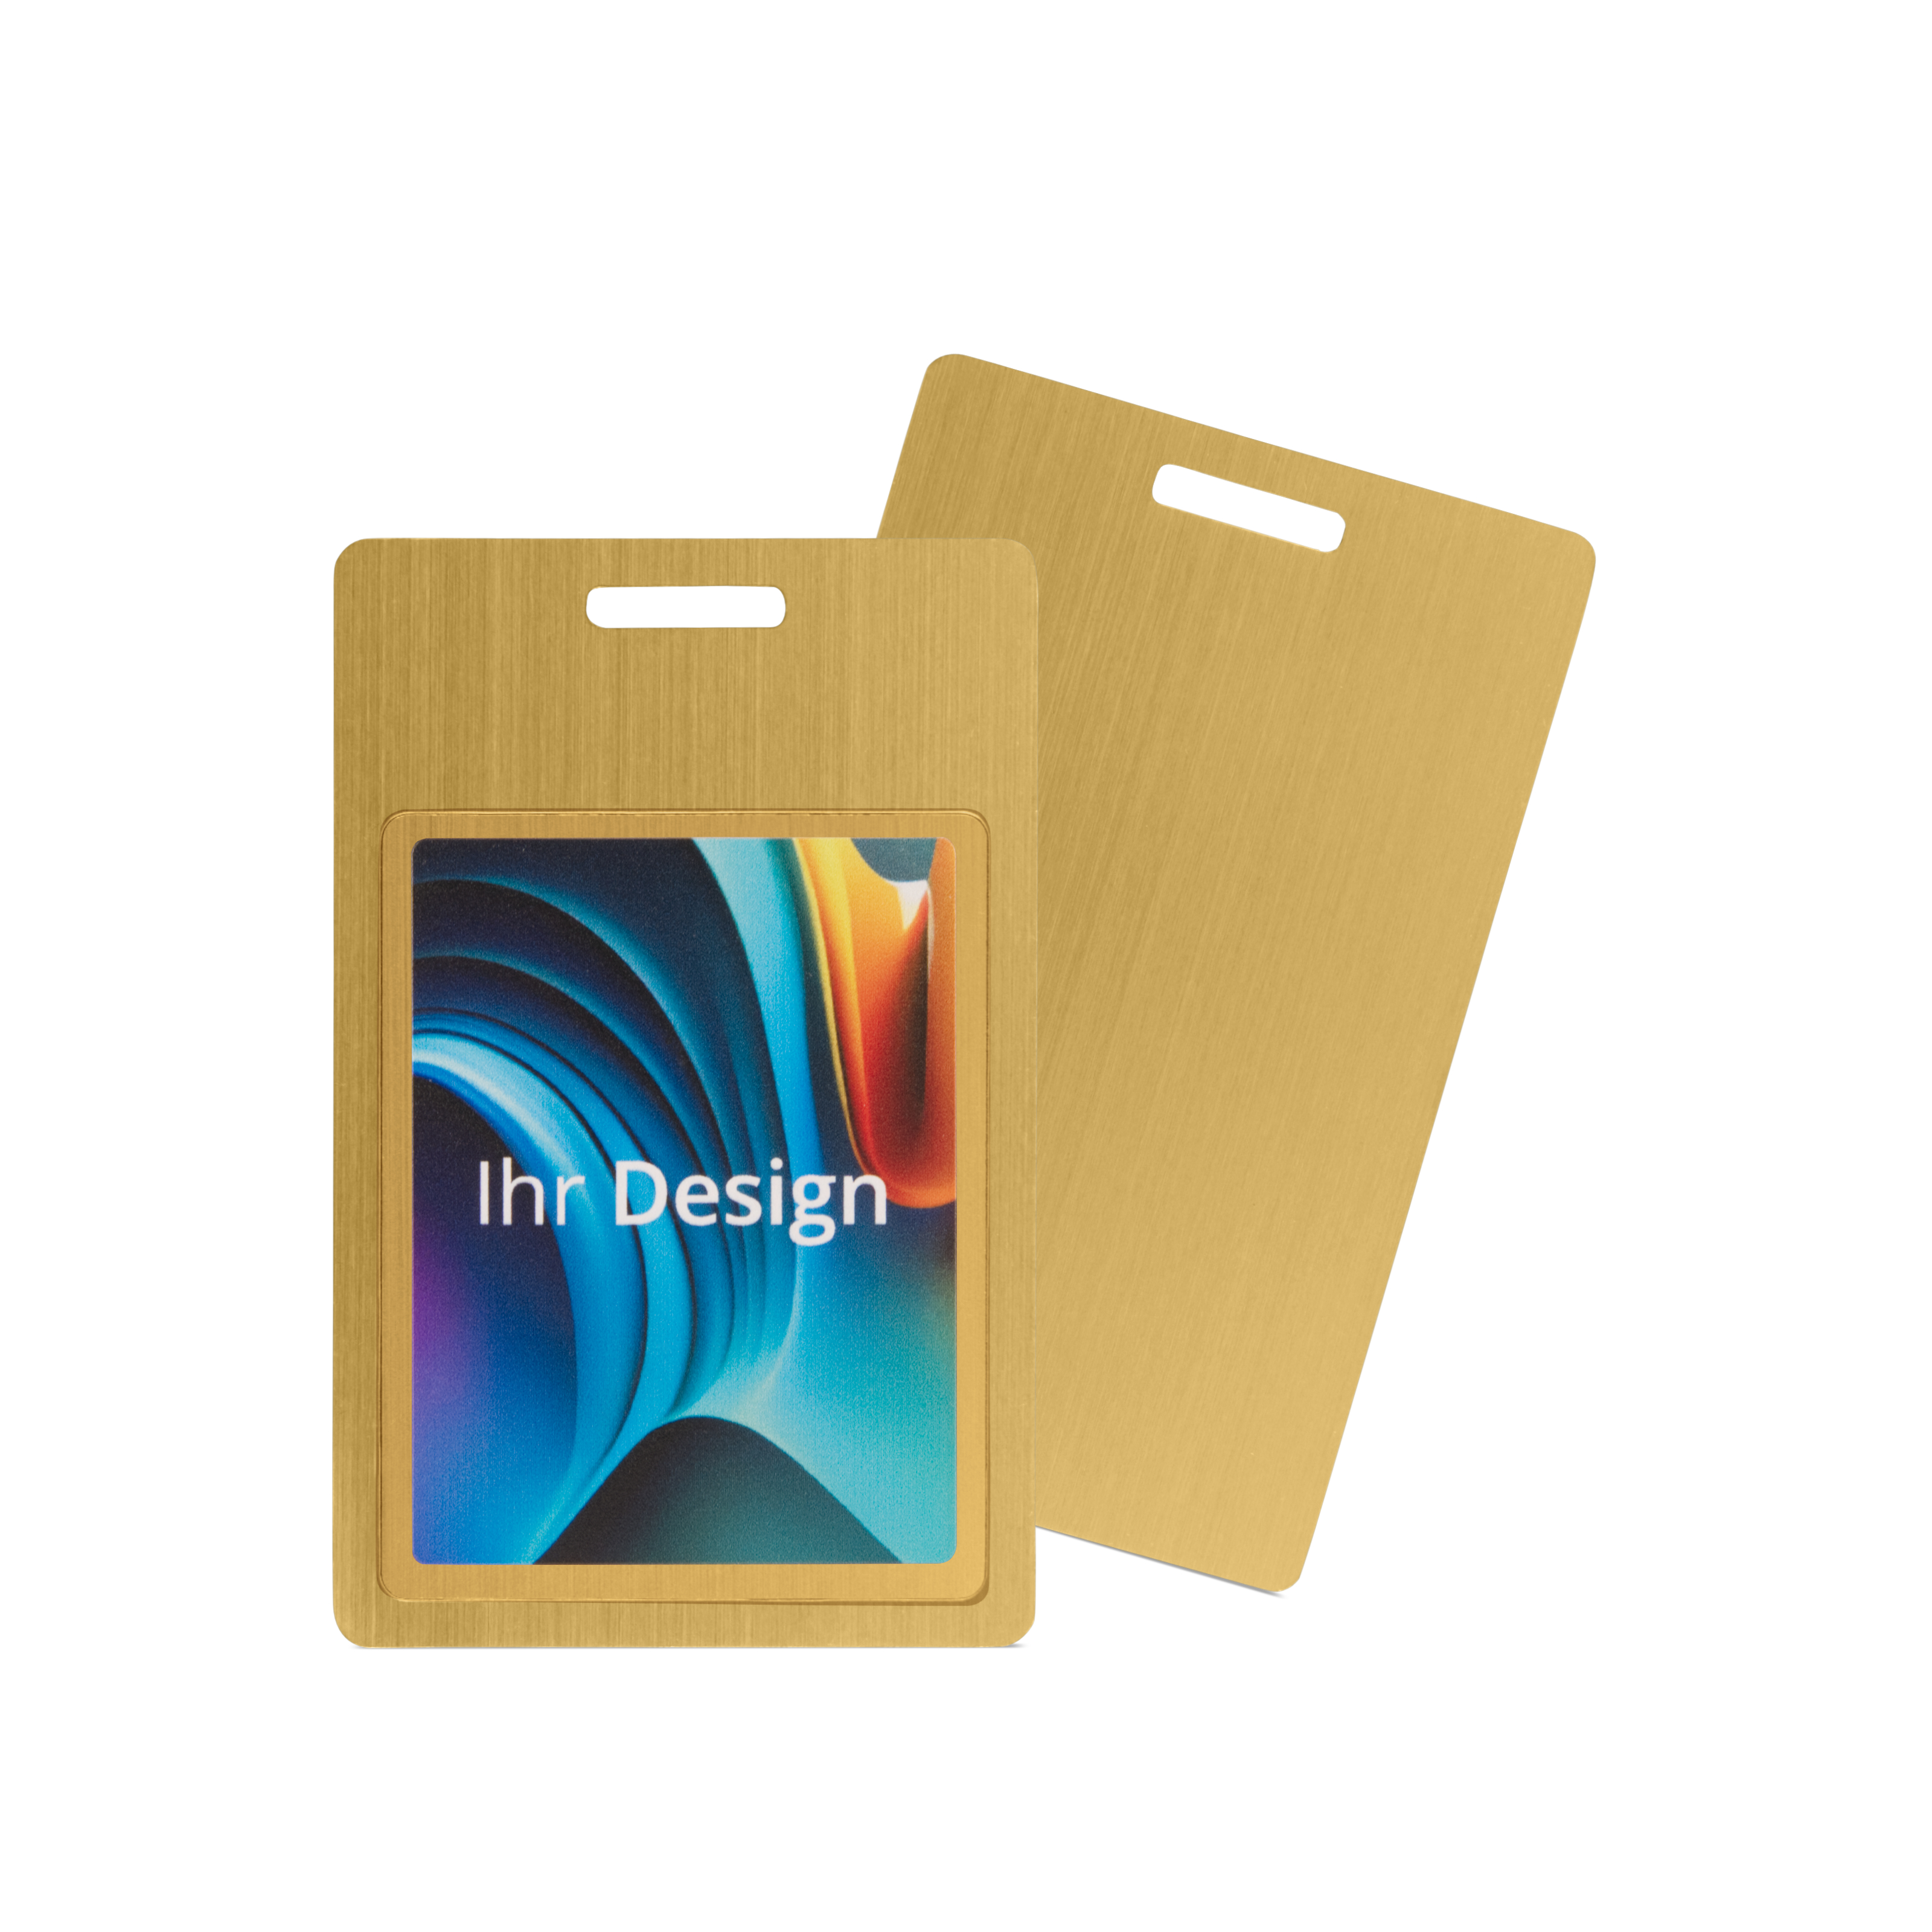 NFC Karte Metall einseitig bedruckt - 85,6 x 54 mm - NTAG213 - 180 Byte - gold - Hochformat mit Schlitz